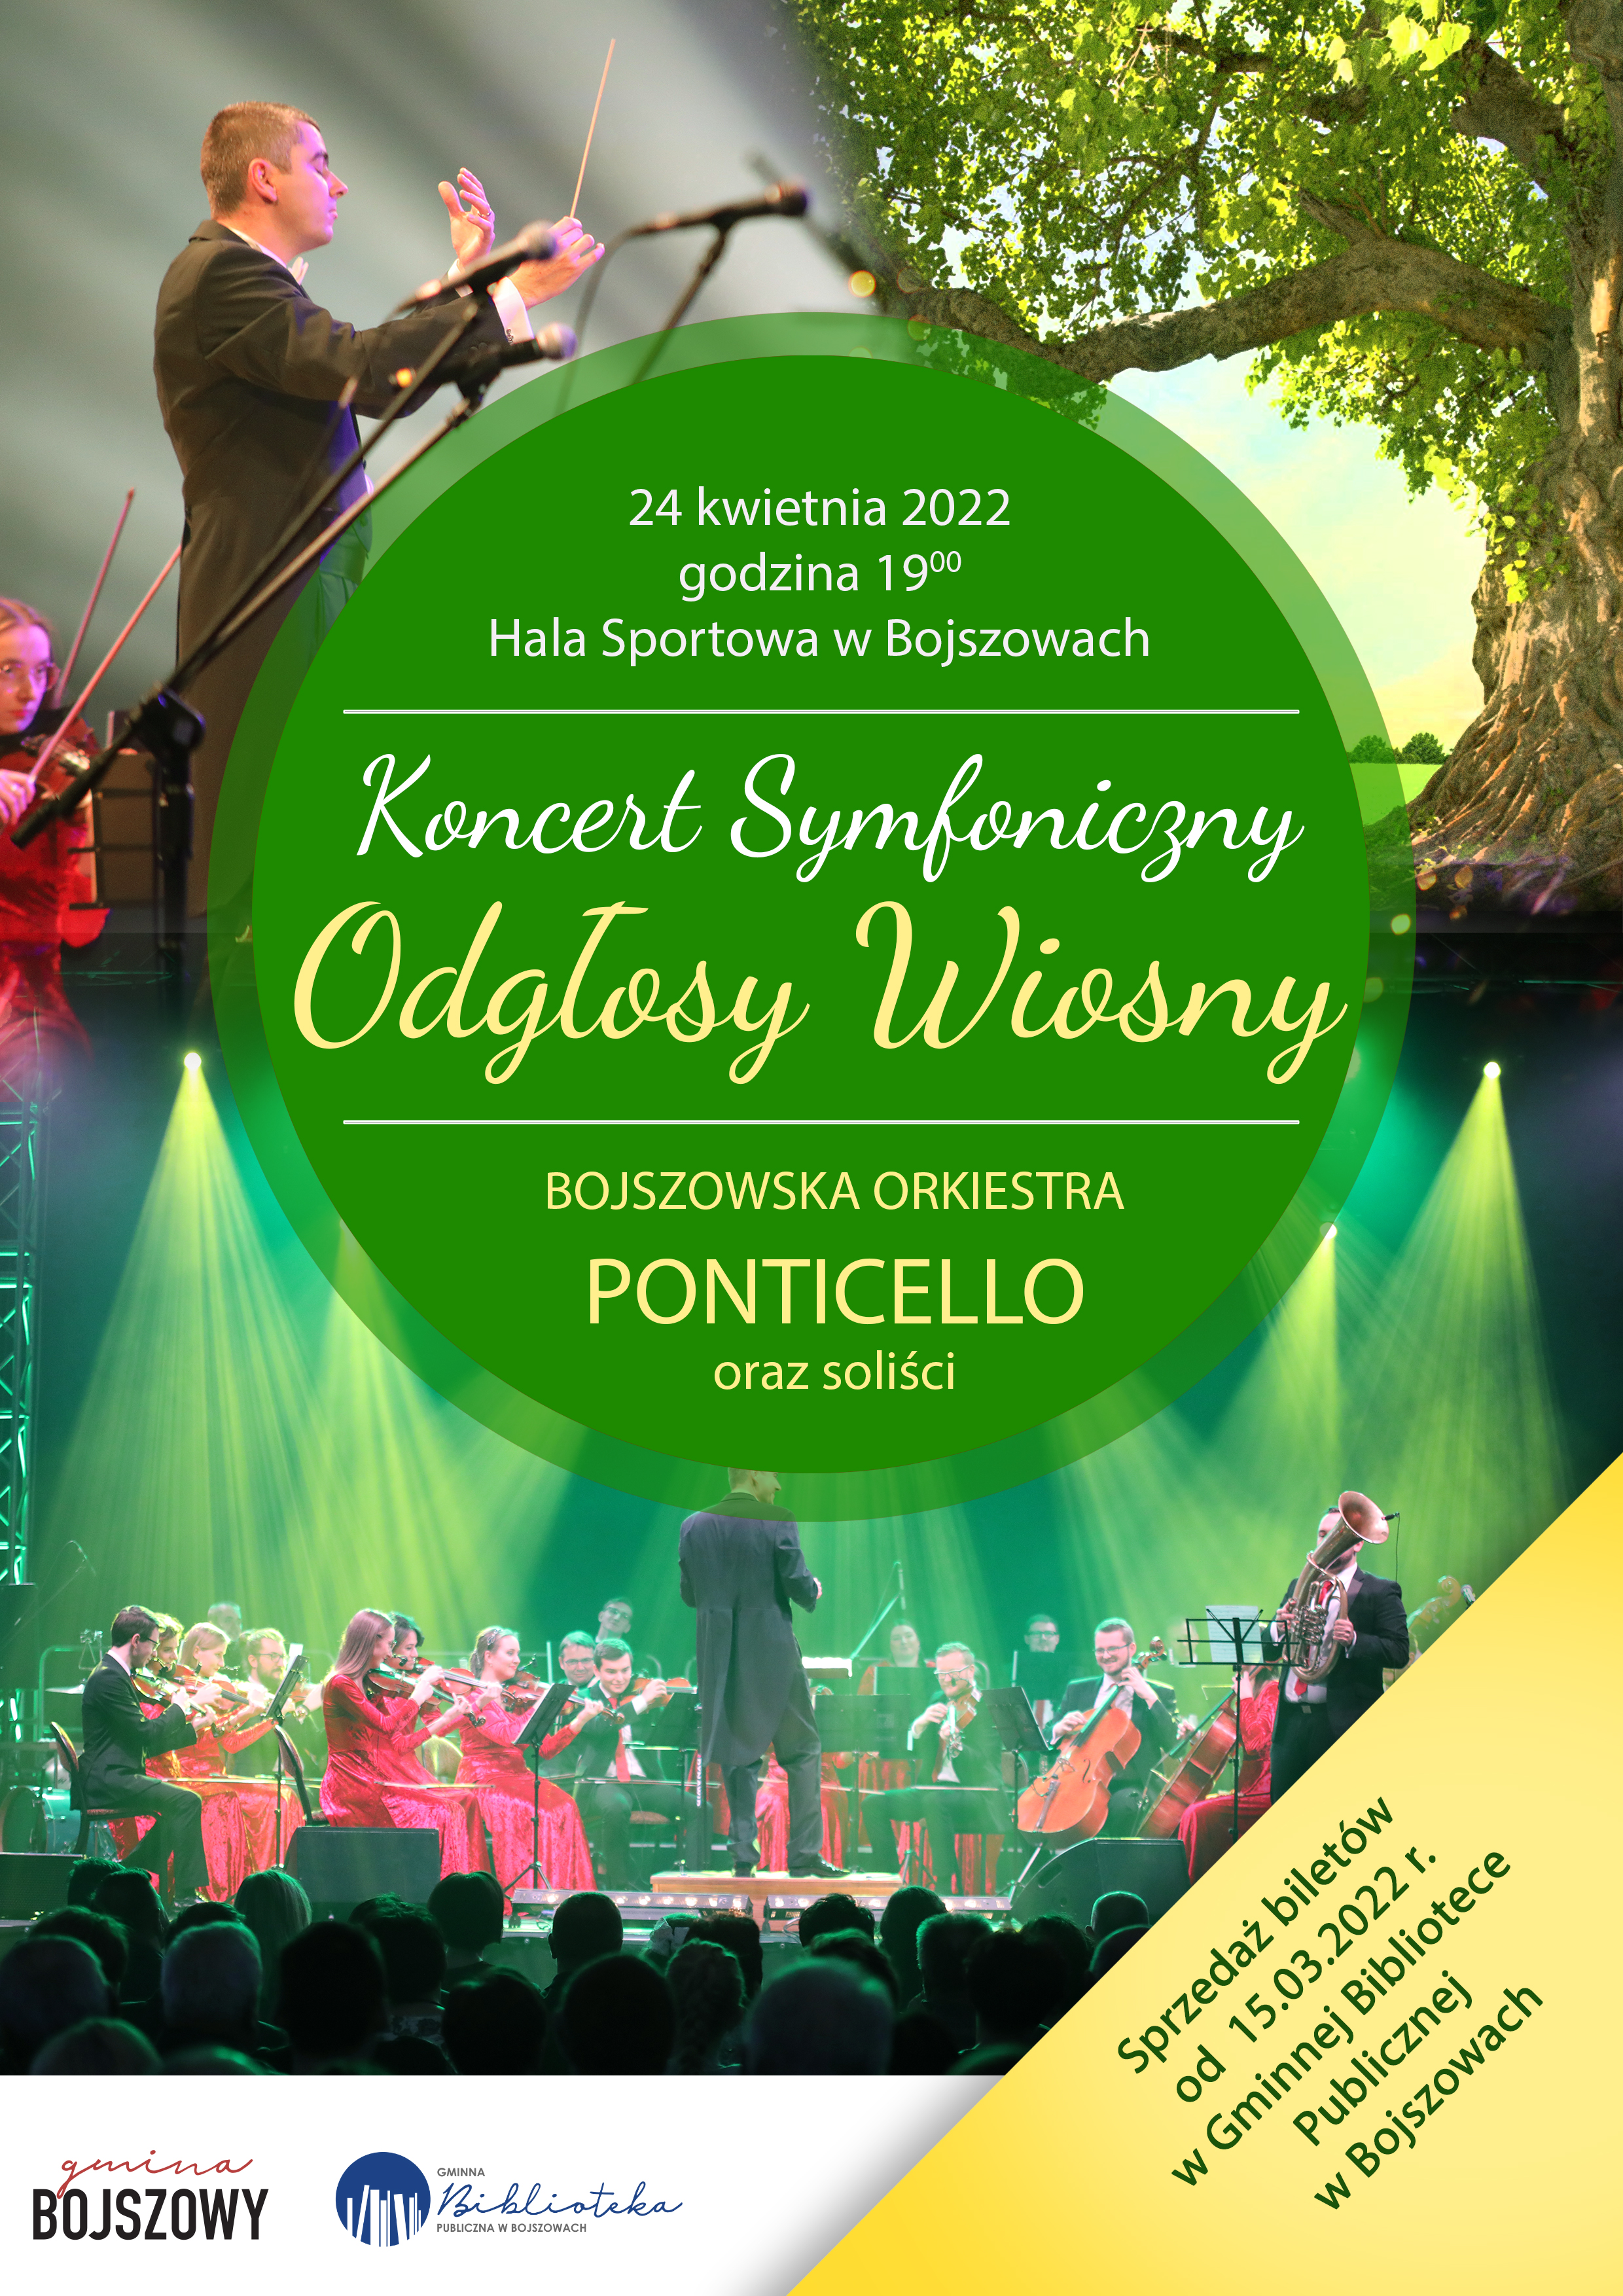 Koncert Symfoniczny Odgłosy Wiosny w wykonaniu Orkiestry Ponticello i solistów odbędzie się 24 kwietnia 2022 roku o godzinie 19:00 w Hali Sportowej w Bojszowach.Bilety można zakupić w Gminnej Bibliotece Publicznej w Bojszowach w godzinach otwarcia od 10:00 do18:00.